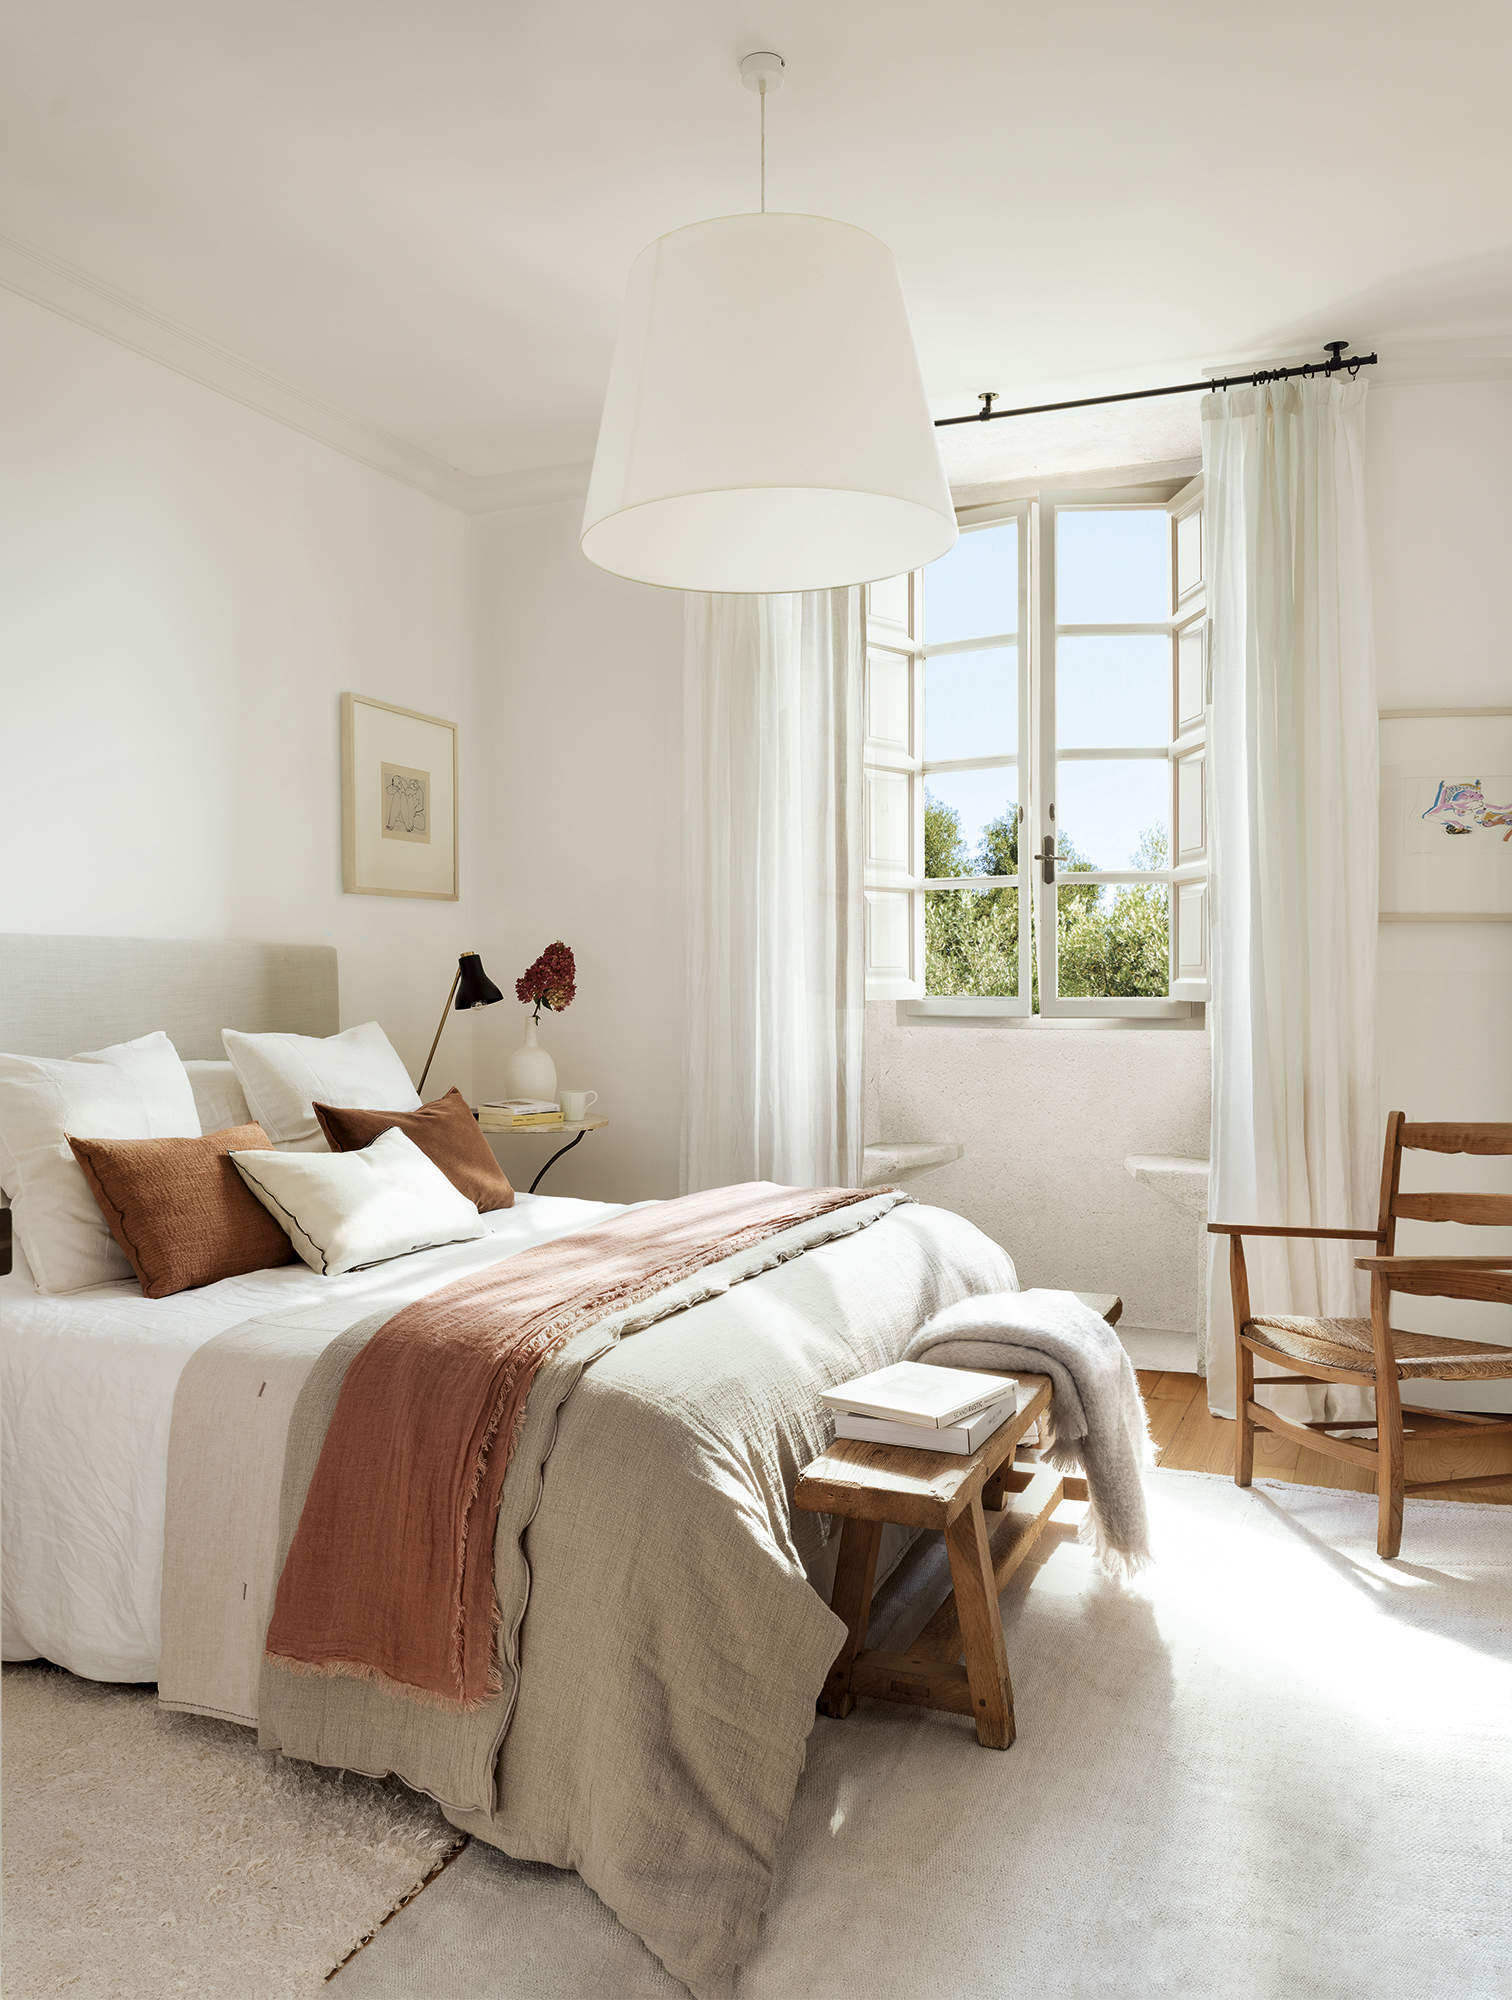 dormitorio principal con ventanal, suelo de madera con alfombra beige, lámpara de techo blanca, ropa de cama beige, cabezal tapizado, banco de madera